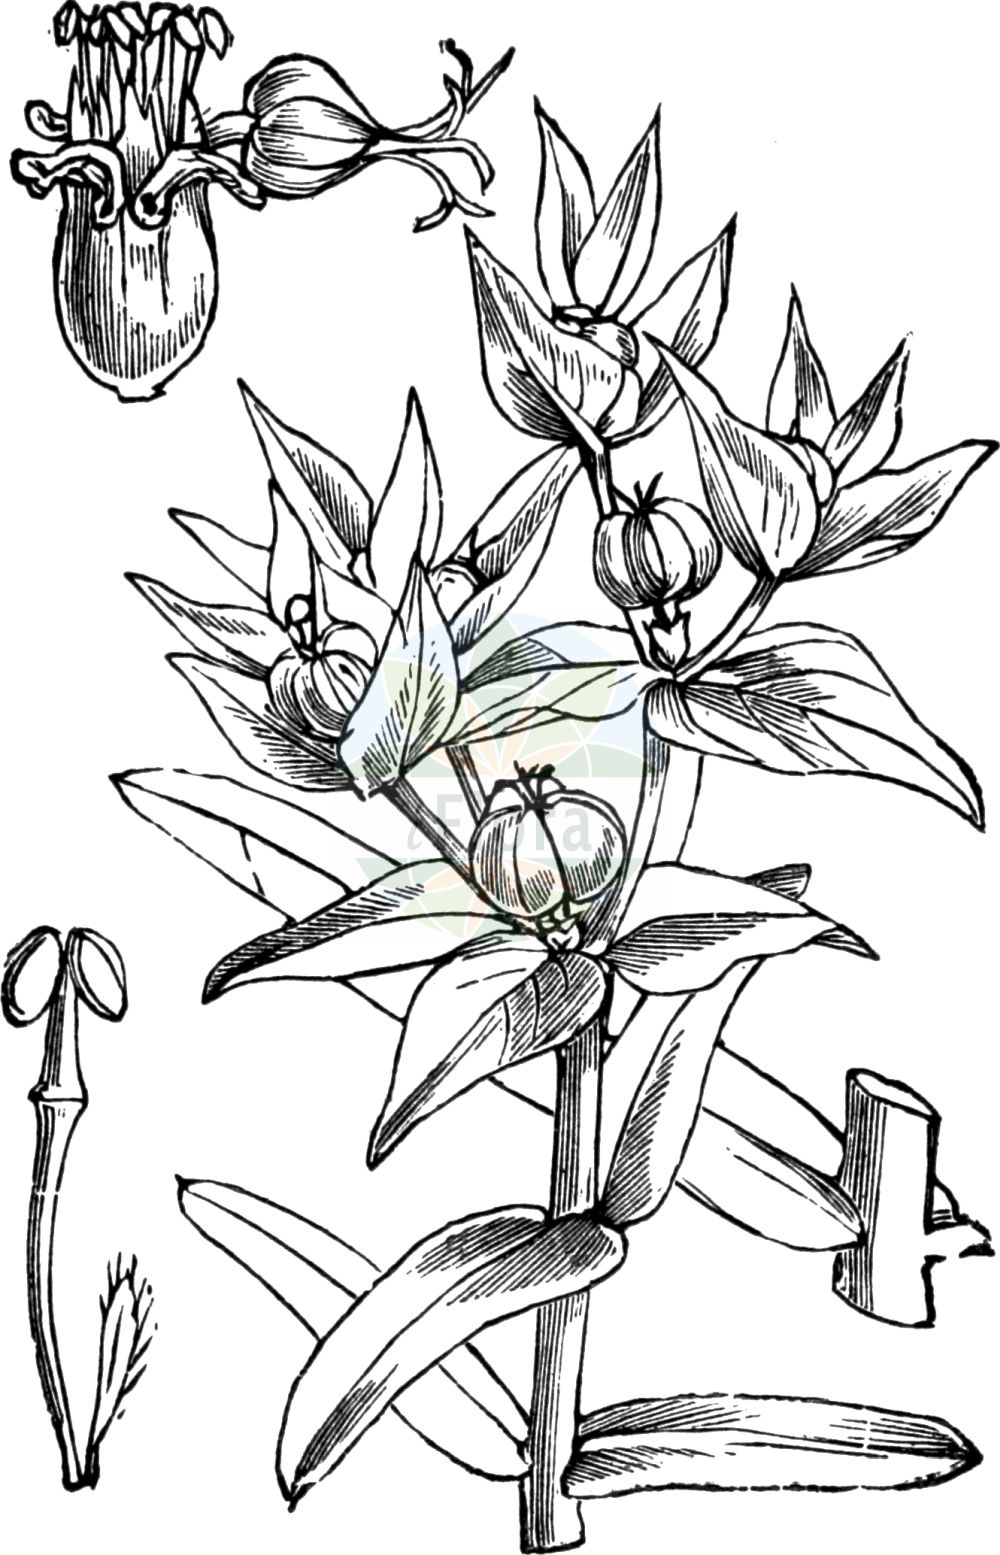 Historische Abbildung von Euphorbia lathyris (Kreuzbblättrige Wolfsmilch - Caper Spurge). Das Bild zeigt Blatt, Bluete, Frucht und Same. ---- Historical Drawing of Euphorbia lathyris (Kreuzbblättrige Wolfsmilch - Caper Spurge). The image is showing leaf, flower, fruit and seed.(Euphorbia lathyris,Kreuzbblättrige Wolfsmilch,Caper Spurge,Epurga lathyris,Euphorbia decussata,Euphorbia lathyris,Euphorbia spongiosa,Euphorbion lathyrum,Galarhoeus decussatus,Galarhoeus lathyris,Keraselma lathyris,Tithymalus cataputia,Tithymalus lathyris,Kreuzbblaettrige Wolfsmilch,Maulwurfskraut,Spring-Wolfsmilch,Caper Spurge,Mole Plant,Paper Spurge,Euphorbia,Wolfsmilch,Spurge,Euphorbiaceae,Wolfsmilchgewächse,Spurge family,Blatt,Bluete,Frucht,Same,leaf,flower,fruit,seed,Fitch et al. (1880))